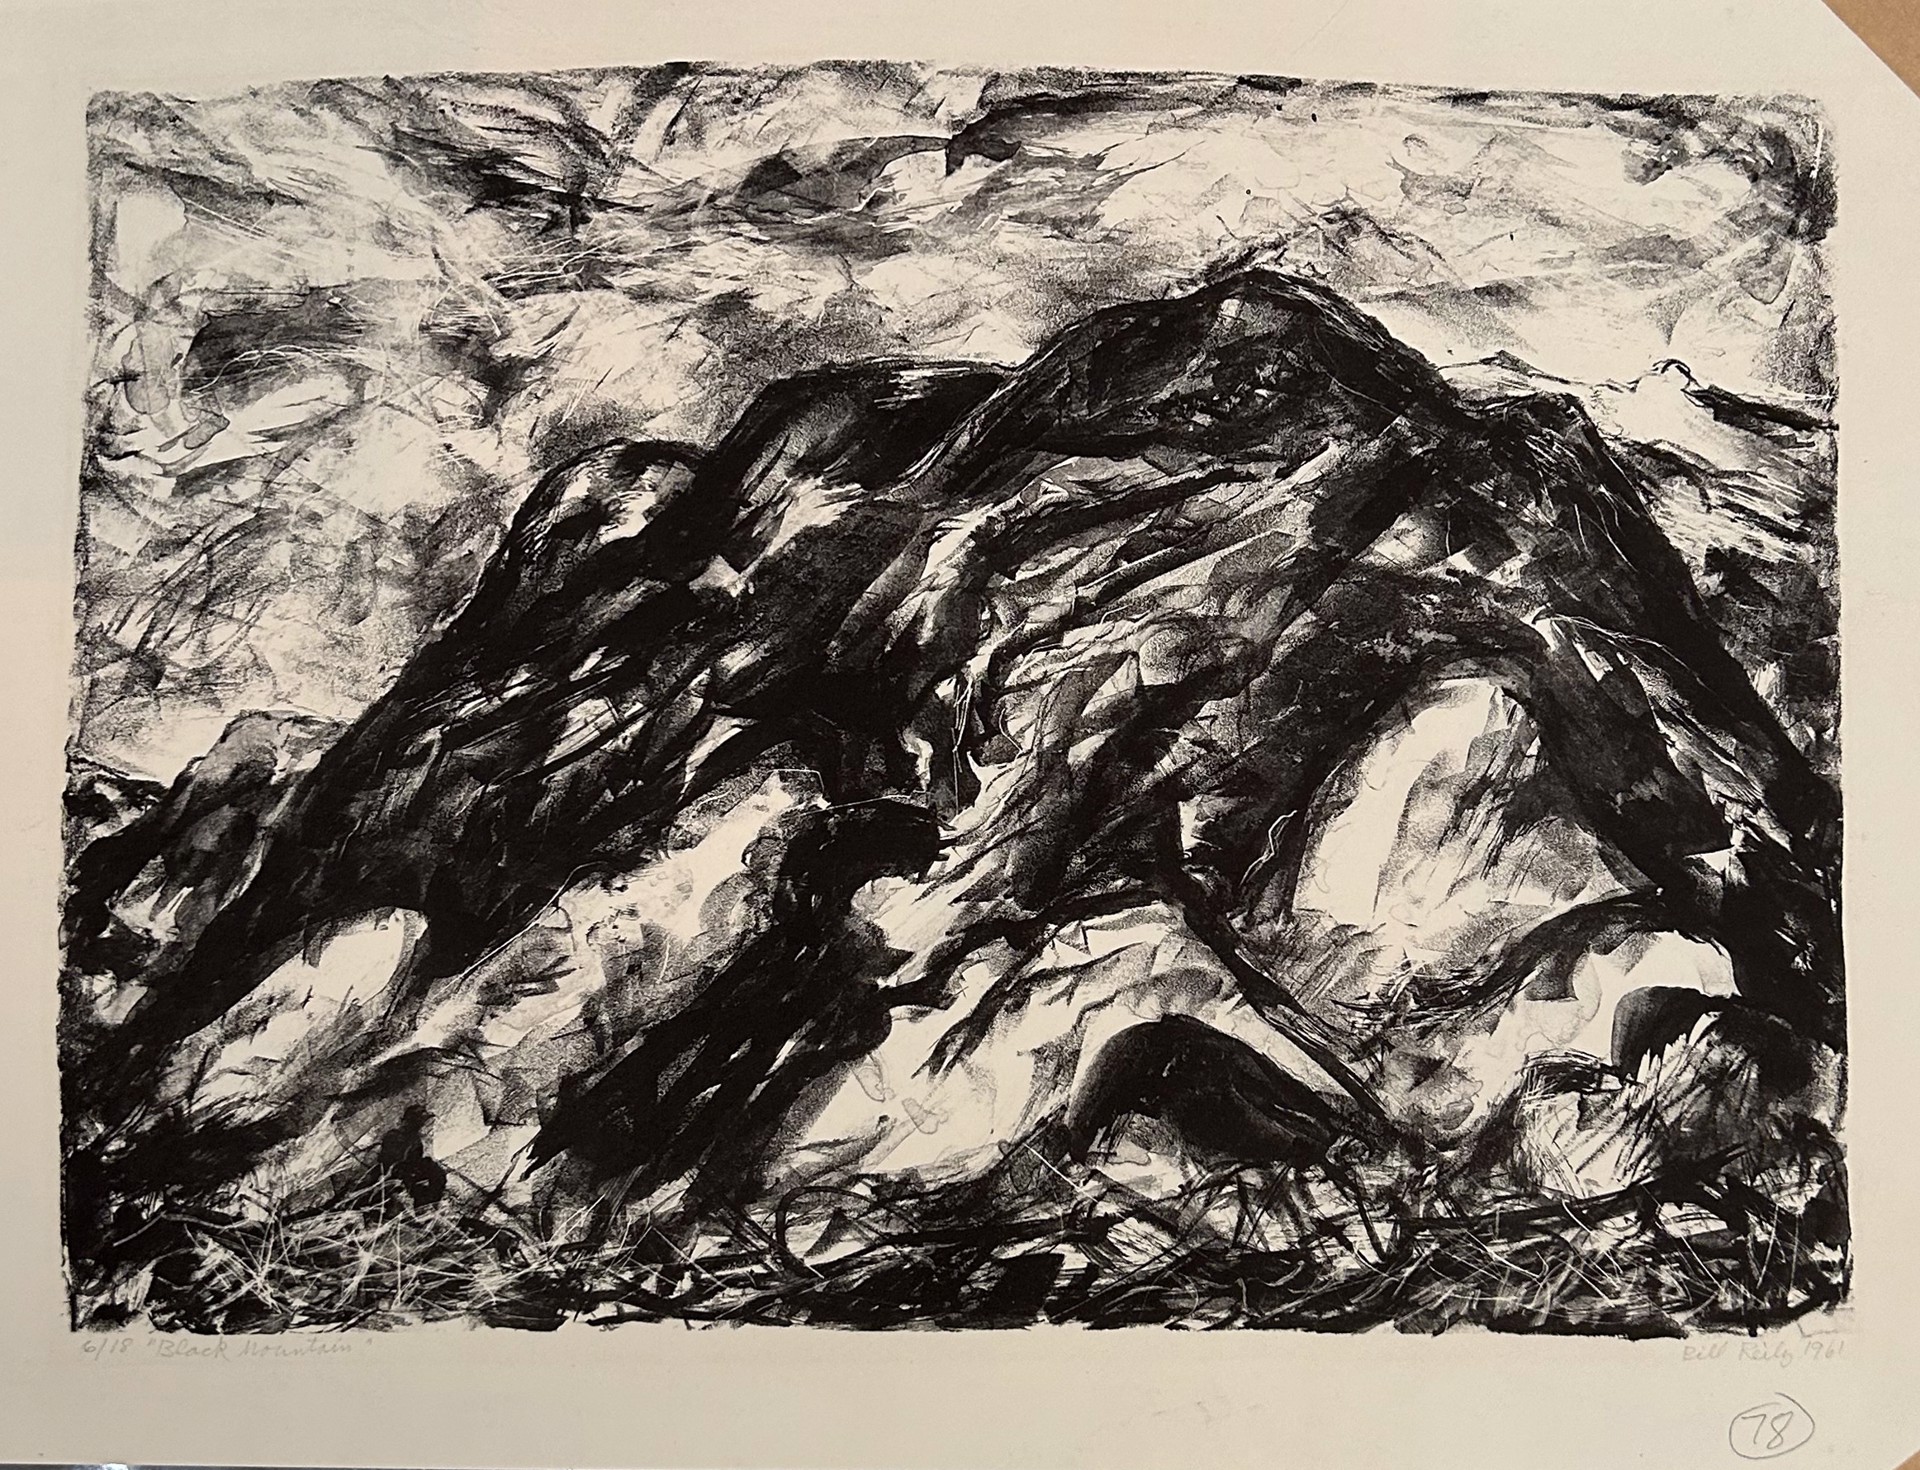 78. Black Mountain by Bill Reily Prints